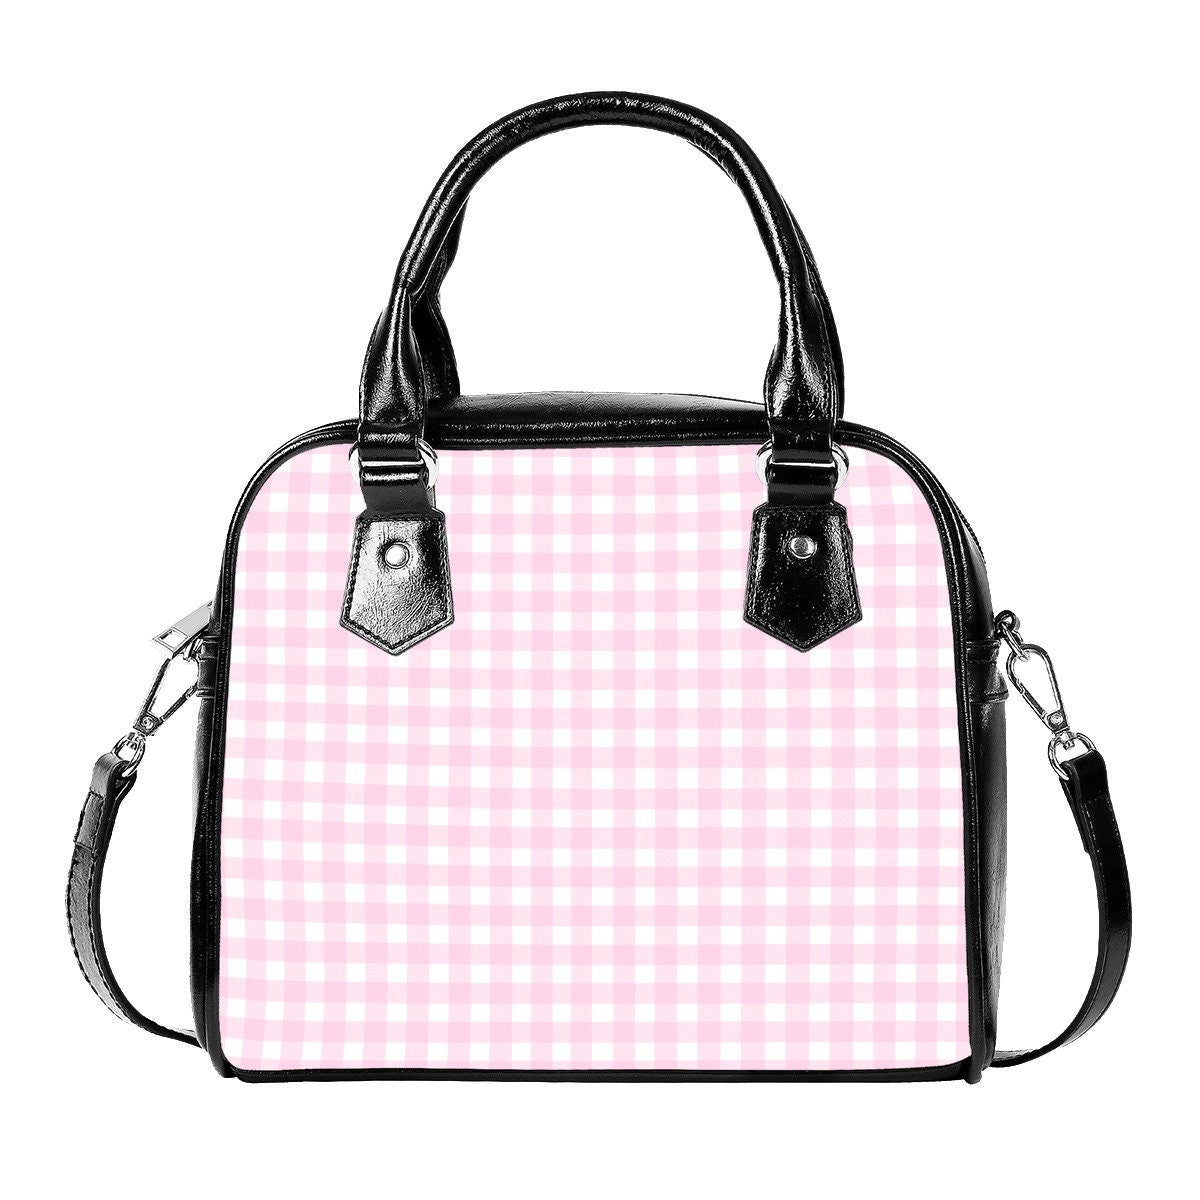 Pink Gingham Handbag, 50s Style Bag, Pink Handbag, Retro Bag, Retro Handbag, Pink Gingham Purse,Women's Bags,Women's Purse,Small Handbag